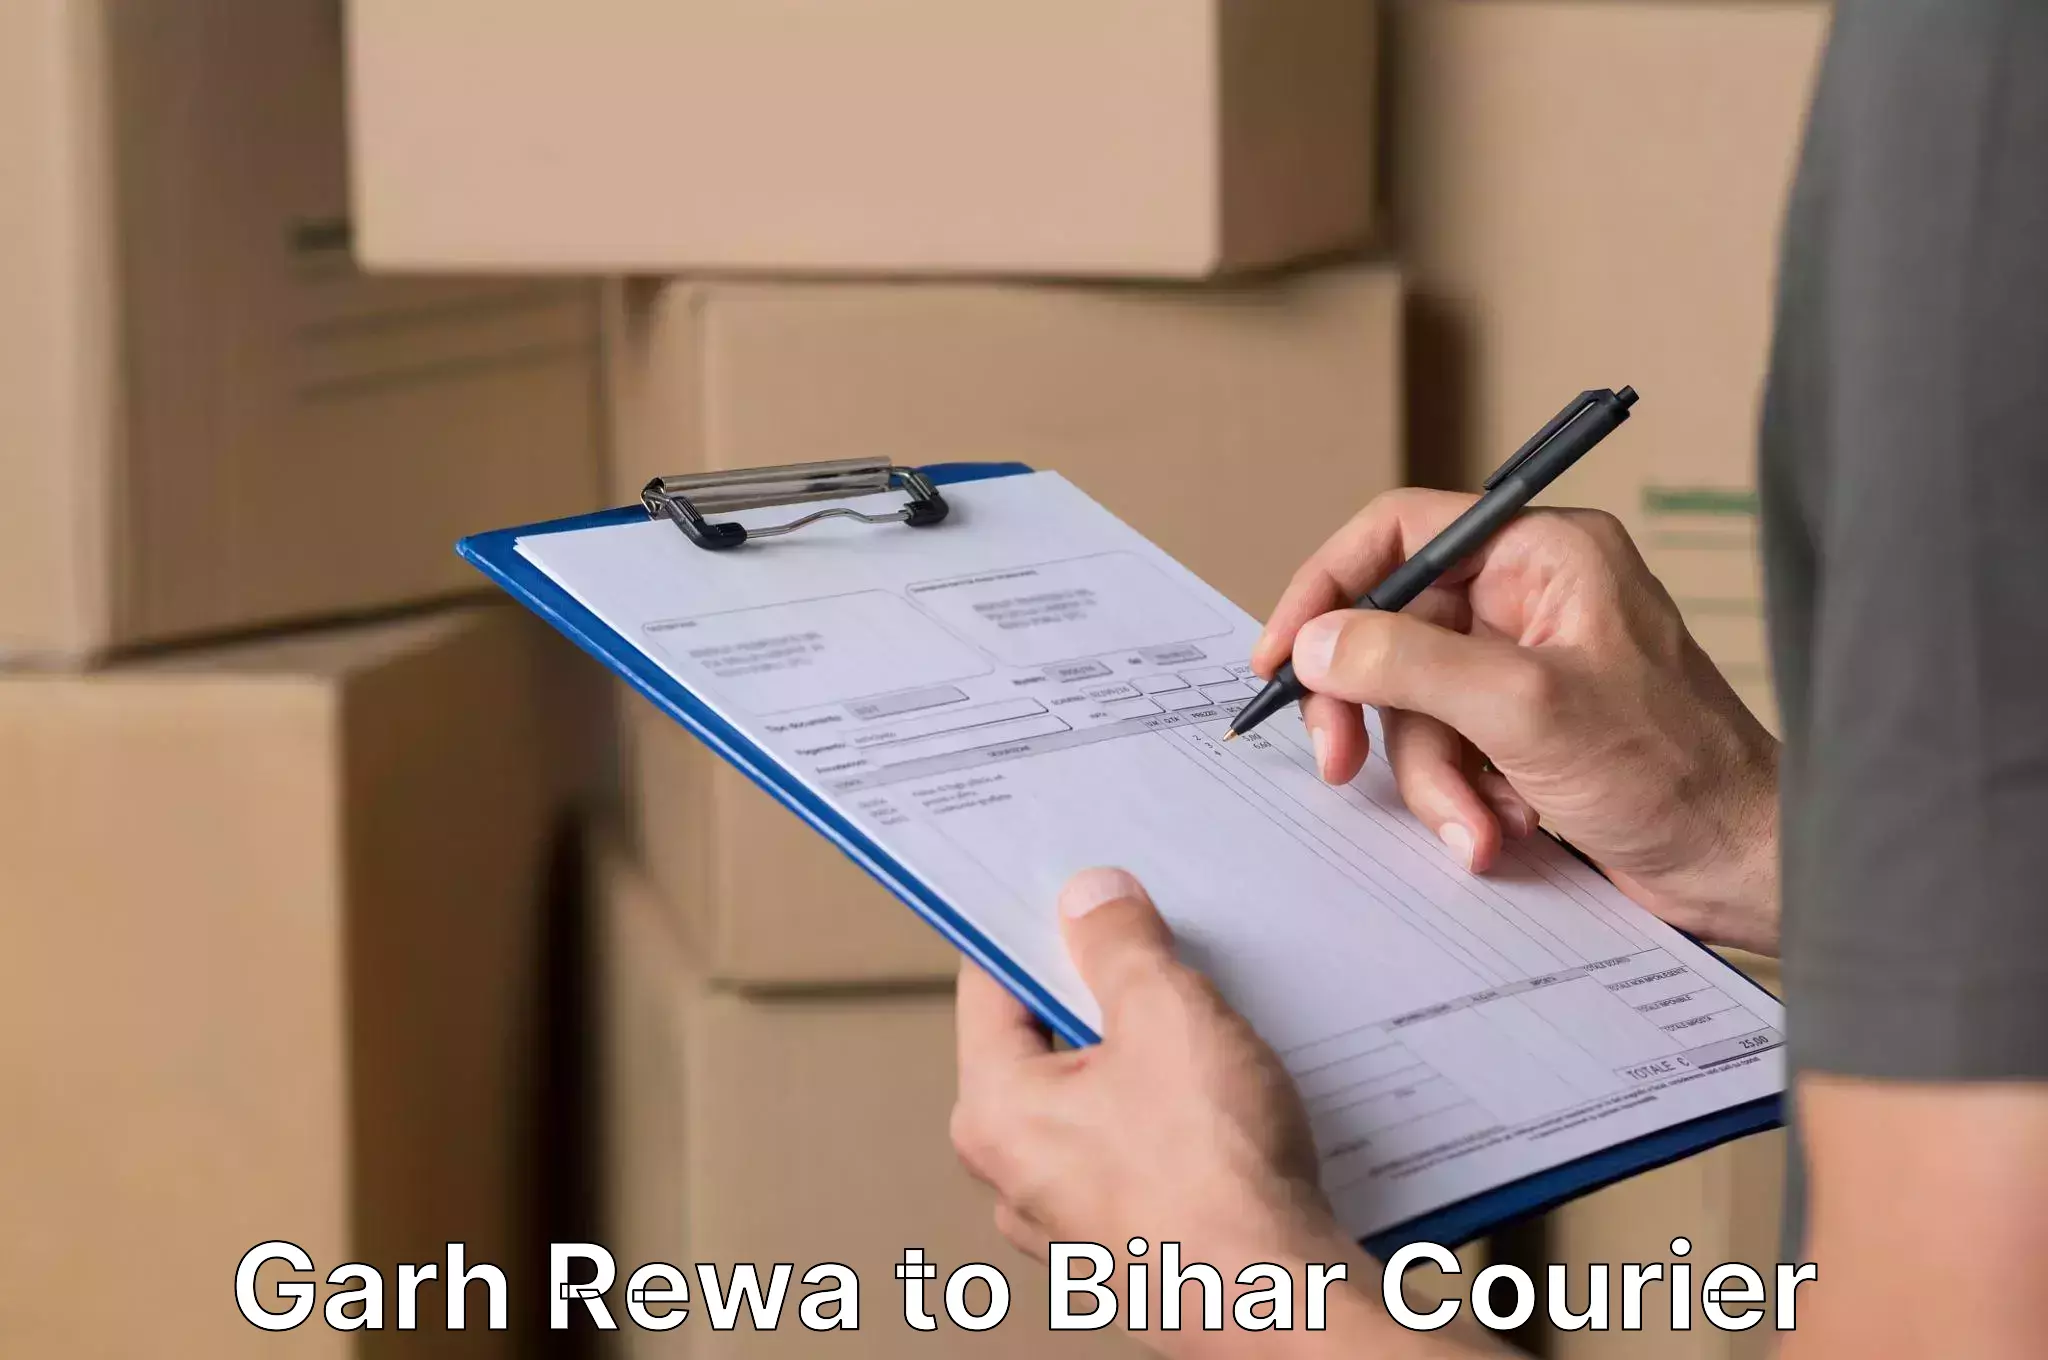 Furniture moving plans Garh Rewa to Bihar